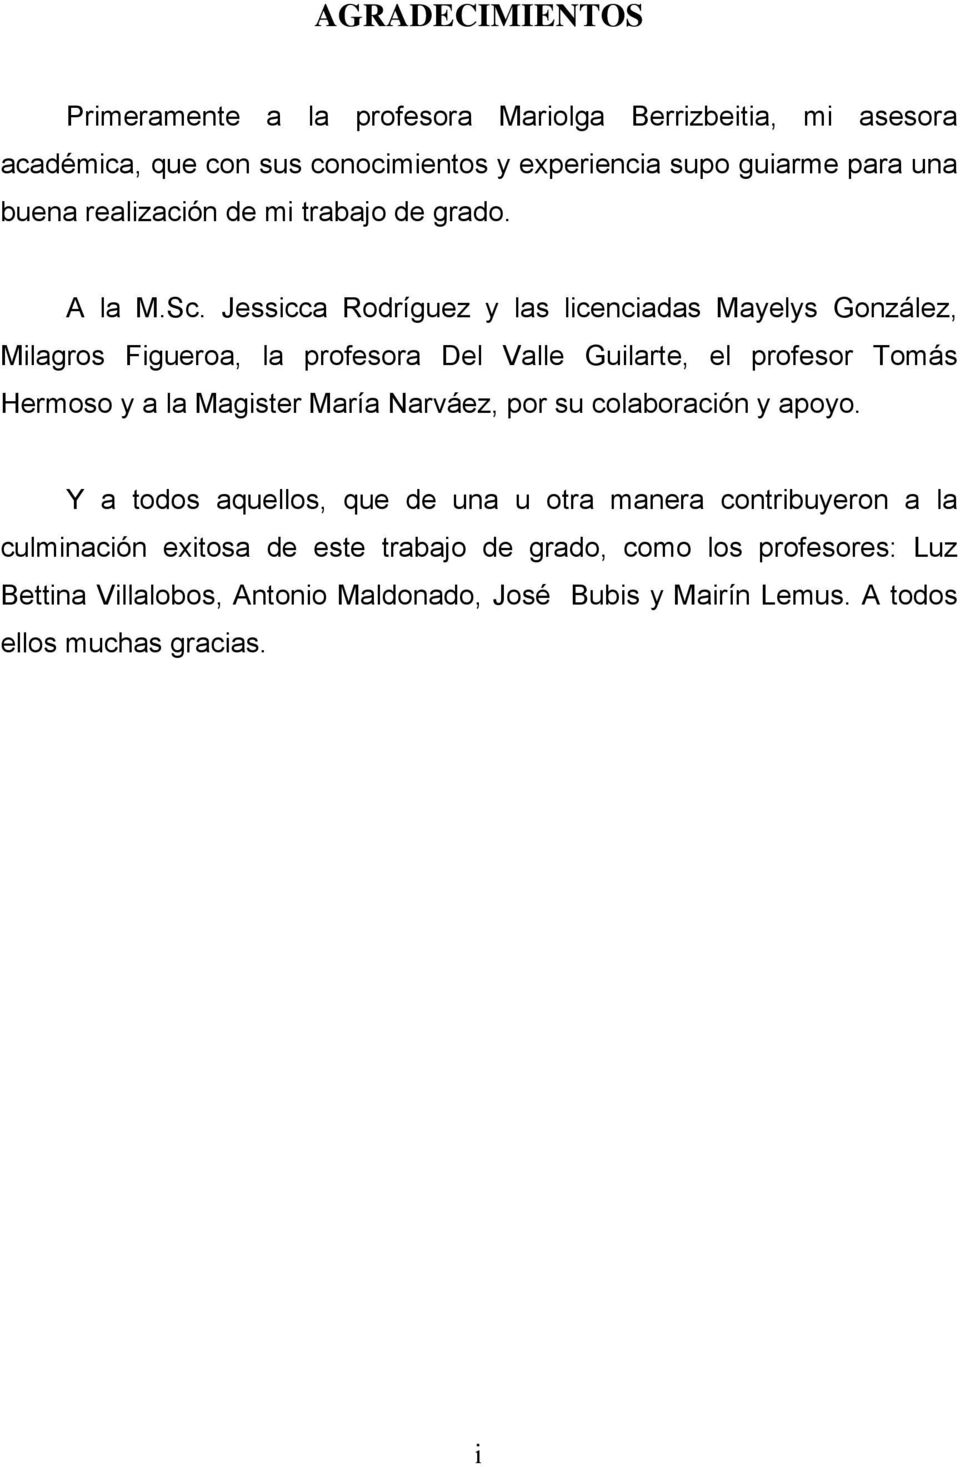 Jessicca Rodríguez y las licenciadas Mayelys González, Milagros Figueroa, la profesora Del Valle Guilarte, el profesor Tomás Hermoso y a la Magister María